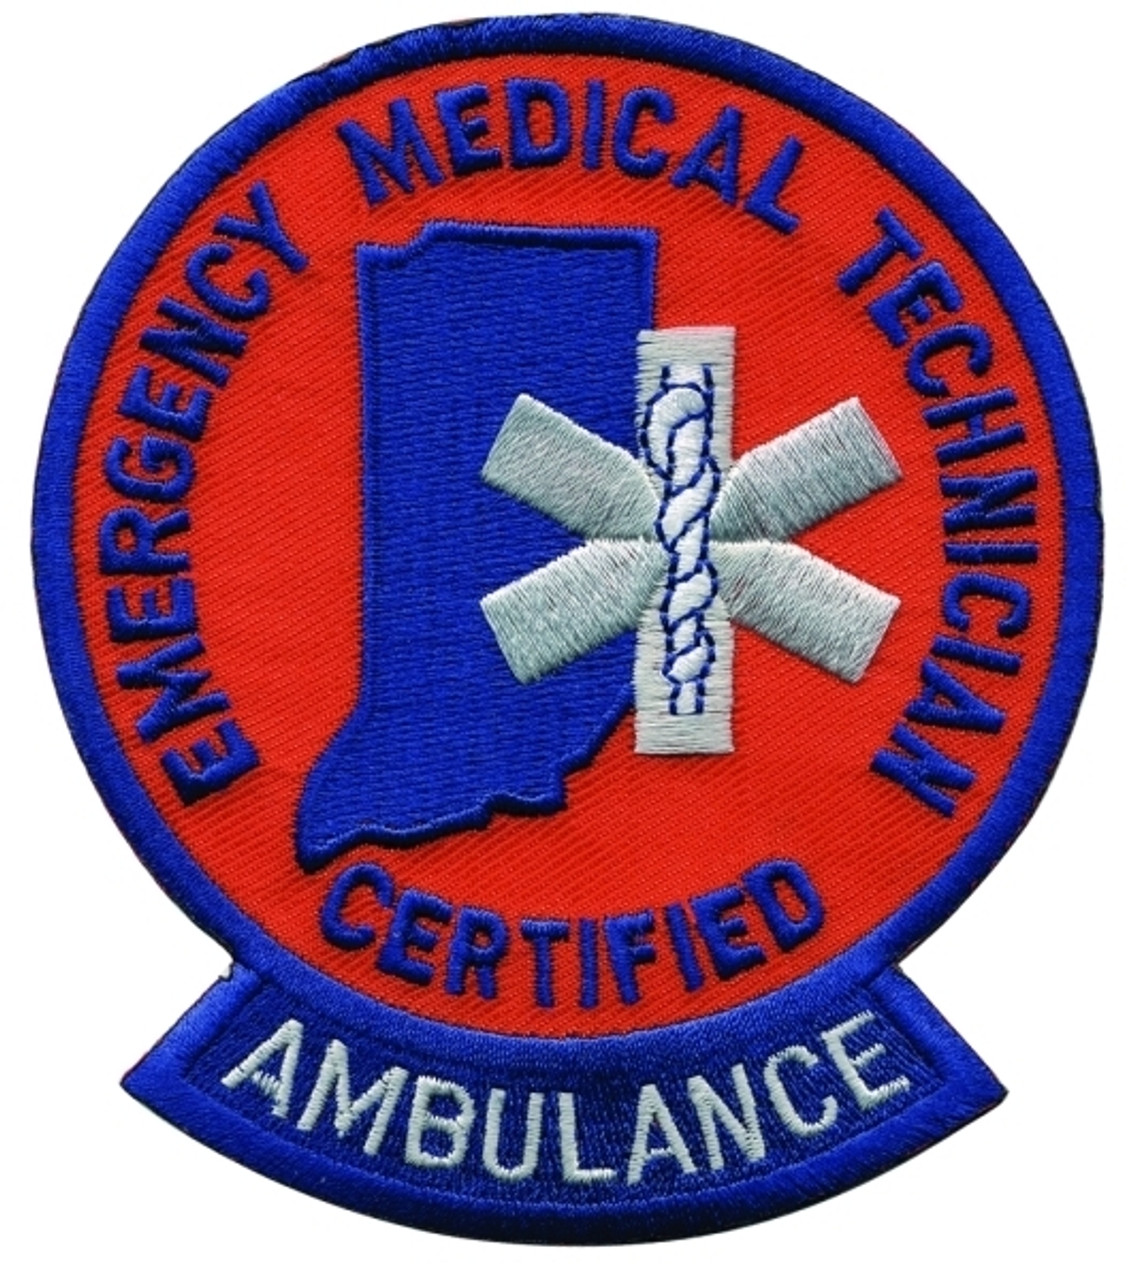 IN - CERTIFIED EMT AMBULANCE Shoulder Patch, 3-1/2x4-1/8